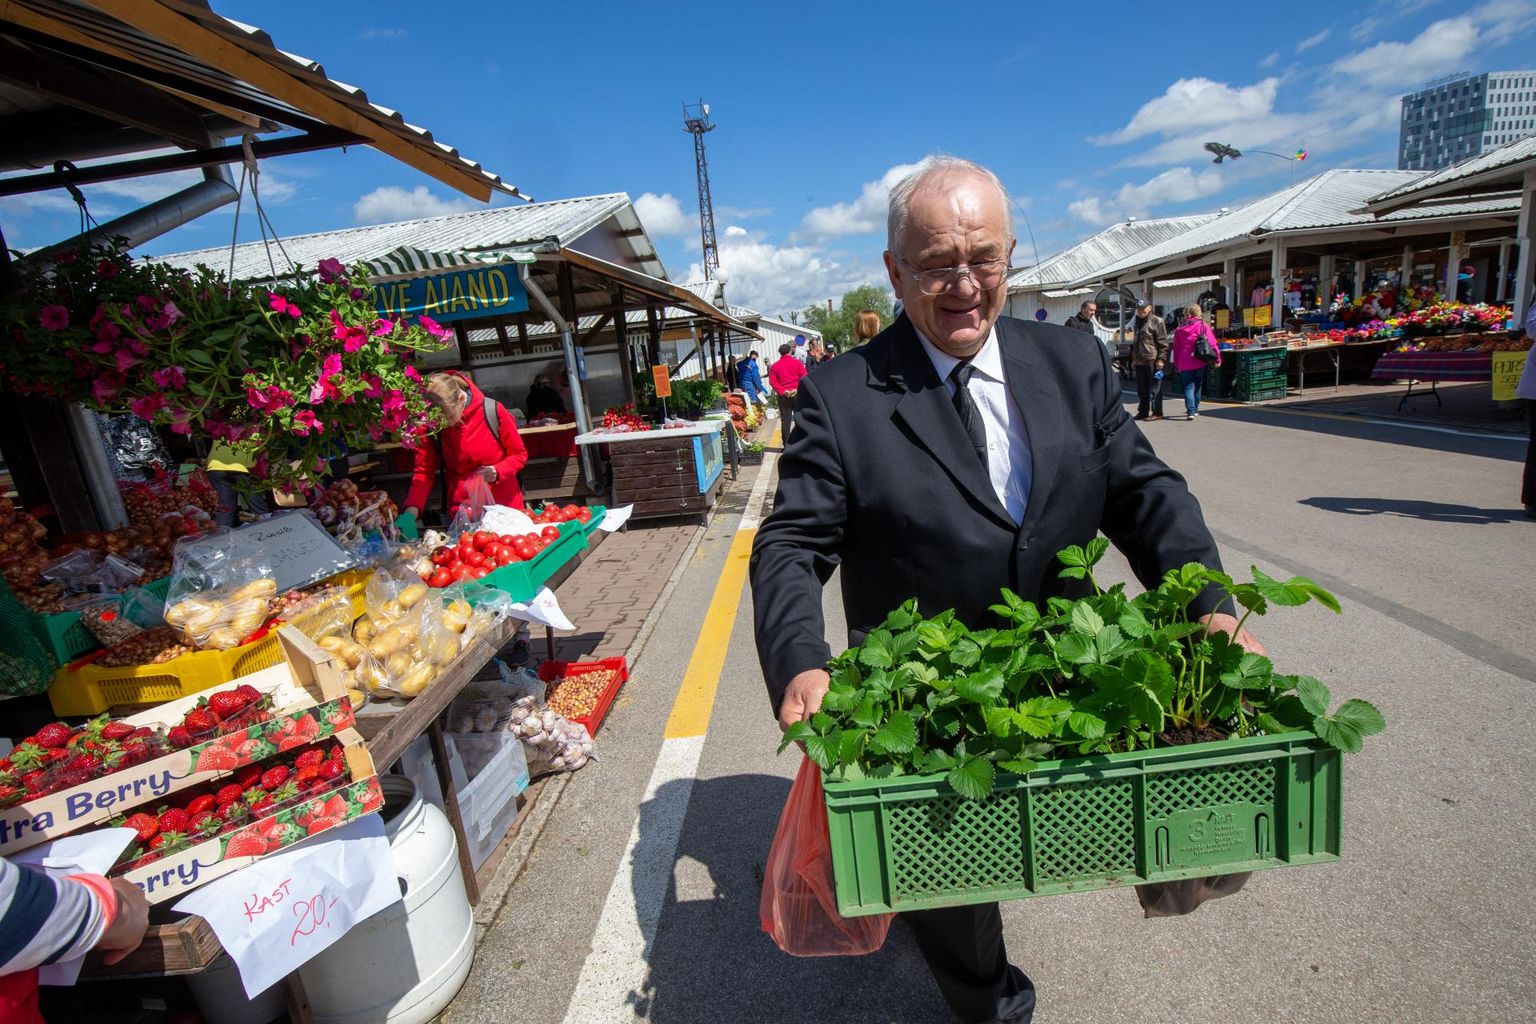 Elva ettevõtja Tõnu Aigro viis laupäeval Tartu turult koduaeda maasika- ja kurgitaimi ning sai veel karbi mustikaid ka kaasa.